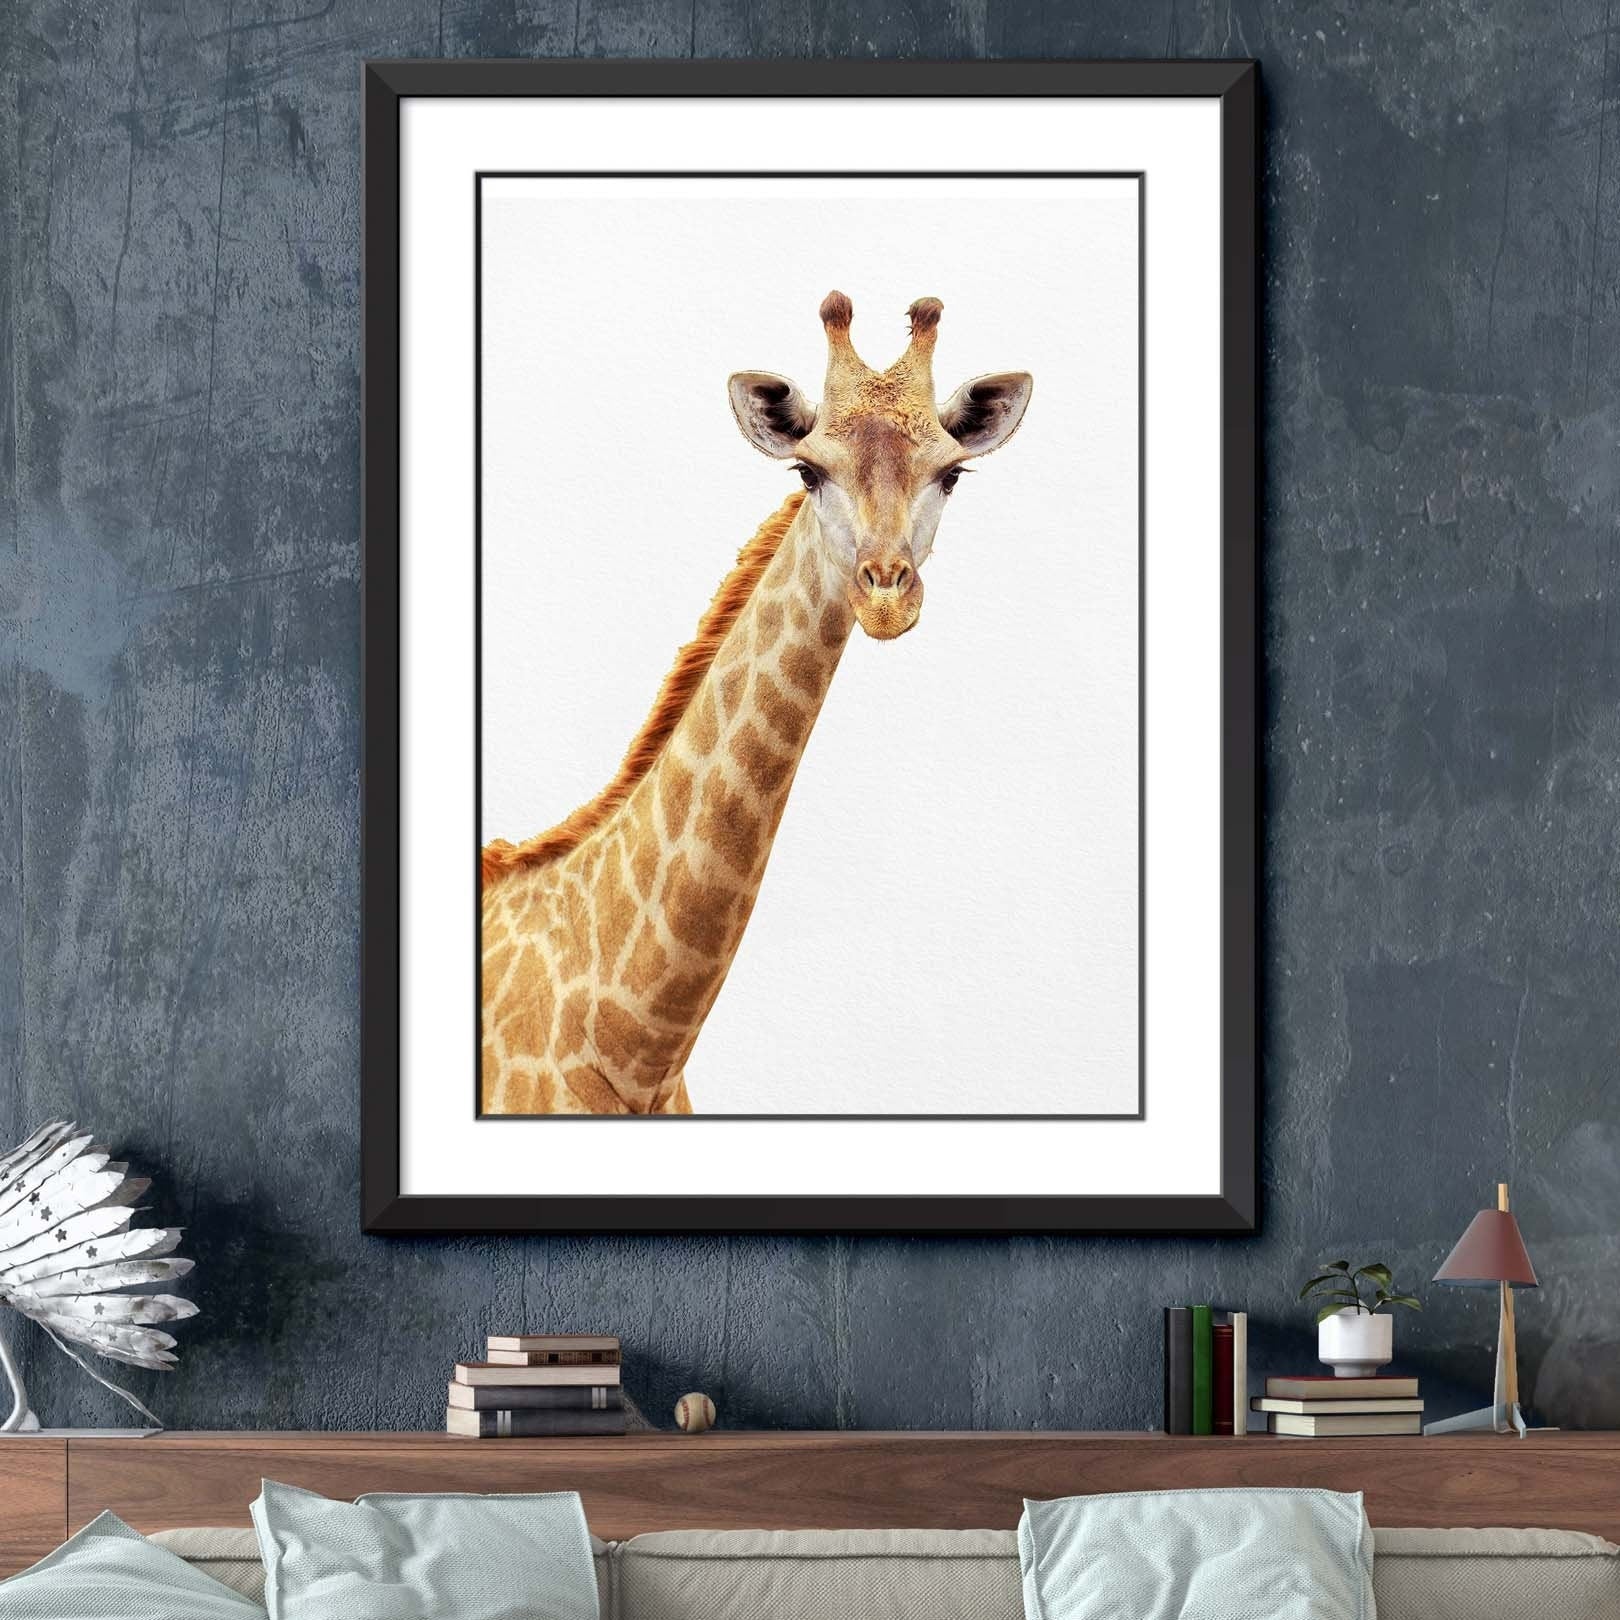 Giraffe Print, Giraffe Wall Art, Giraffe Decor, Living Room Art, Farmhouse Wall Decor, Farmhouse Art, Giraffe Wall Decor,